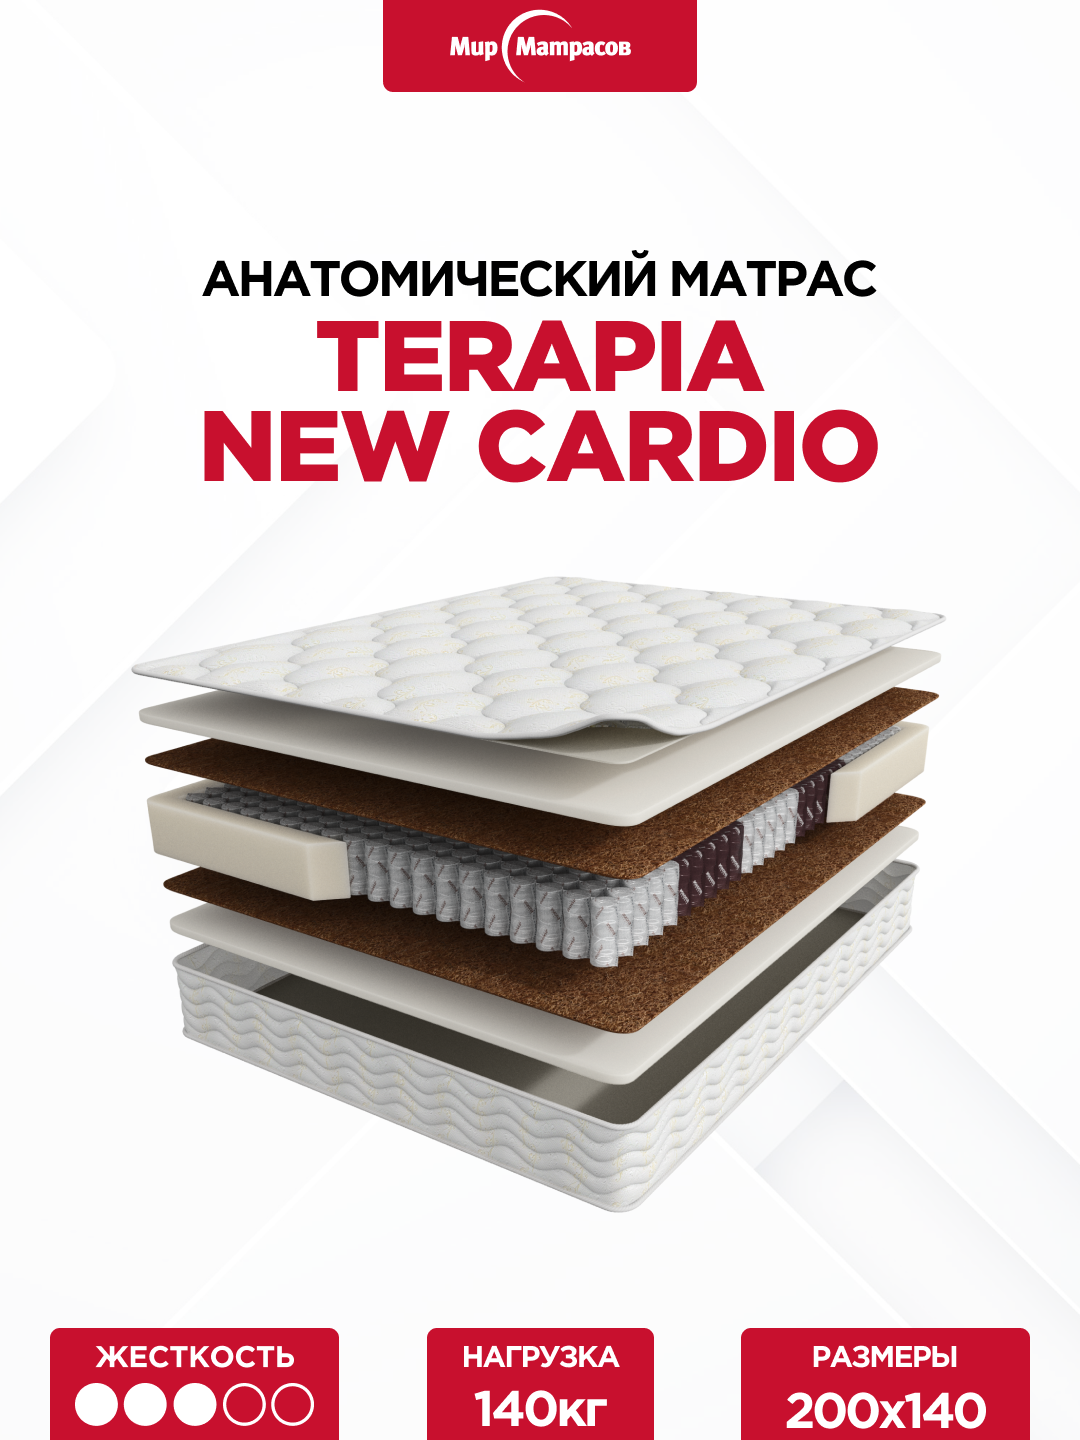 Матрас Terapia New Cardio 200*140 см. Ортопедический двусторонний матрас с независимыми пружинами.